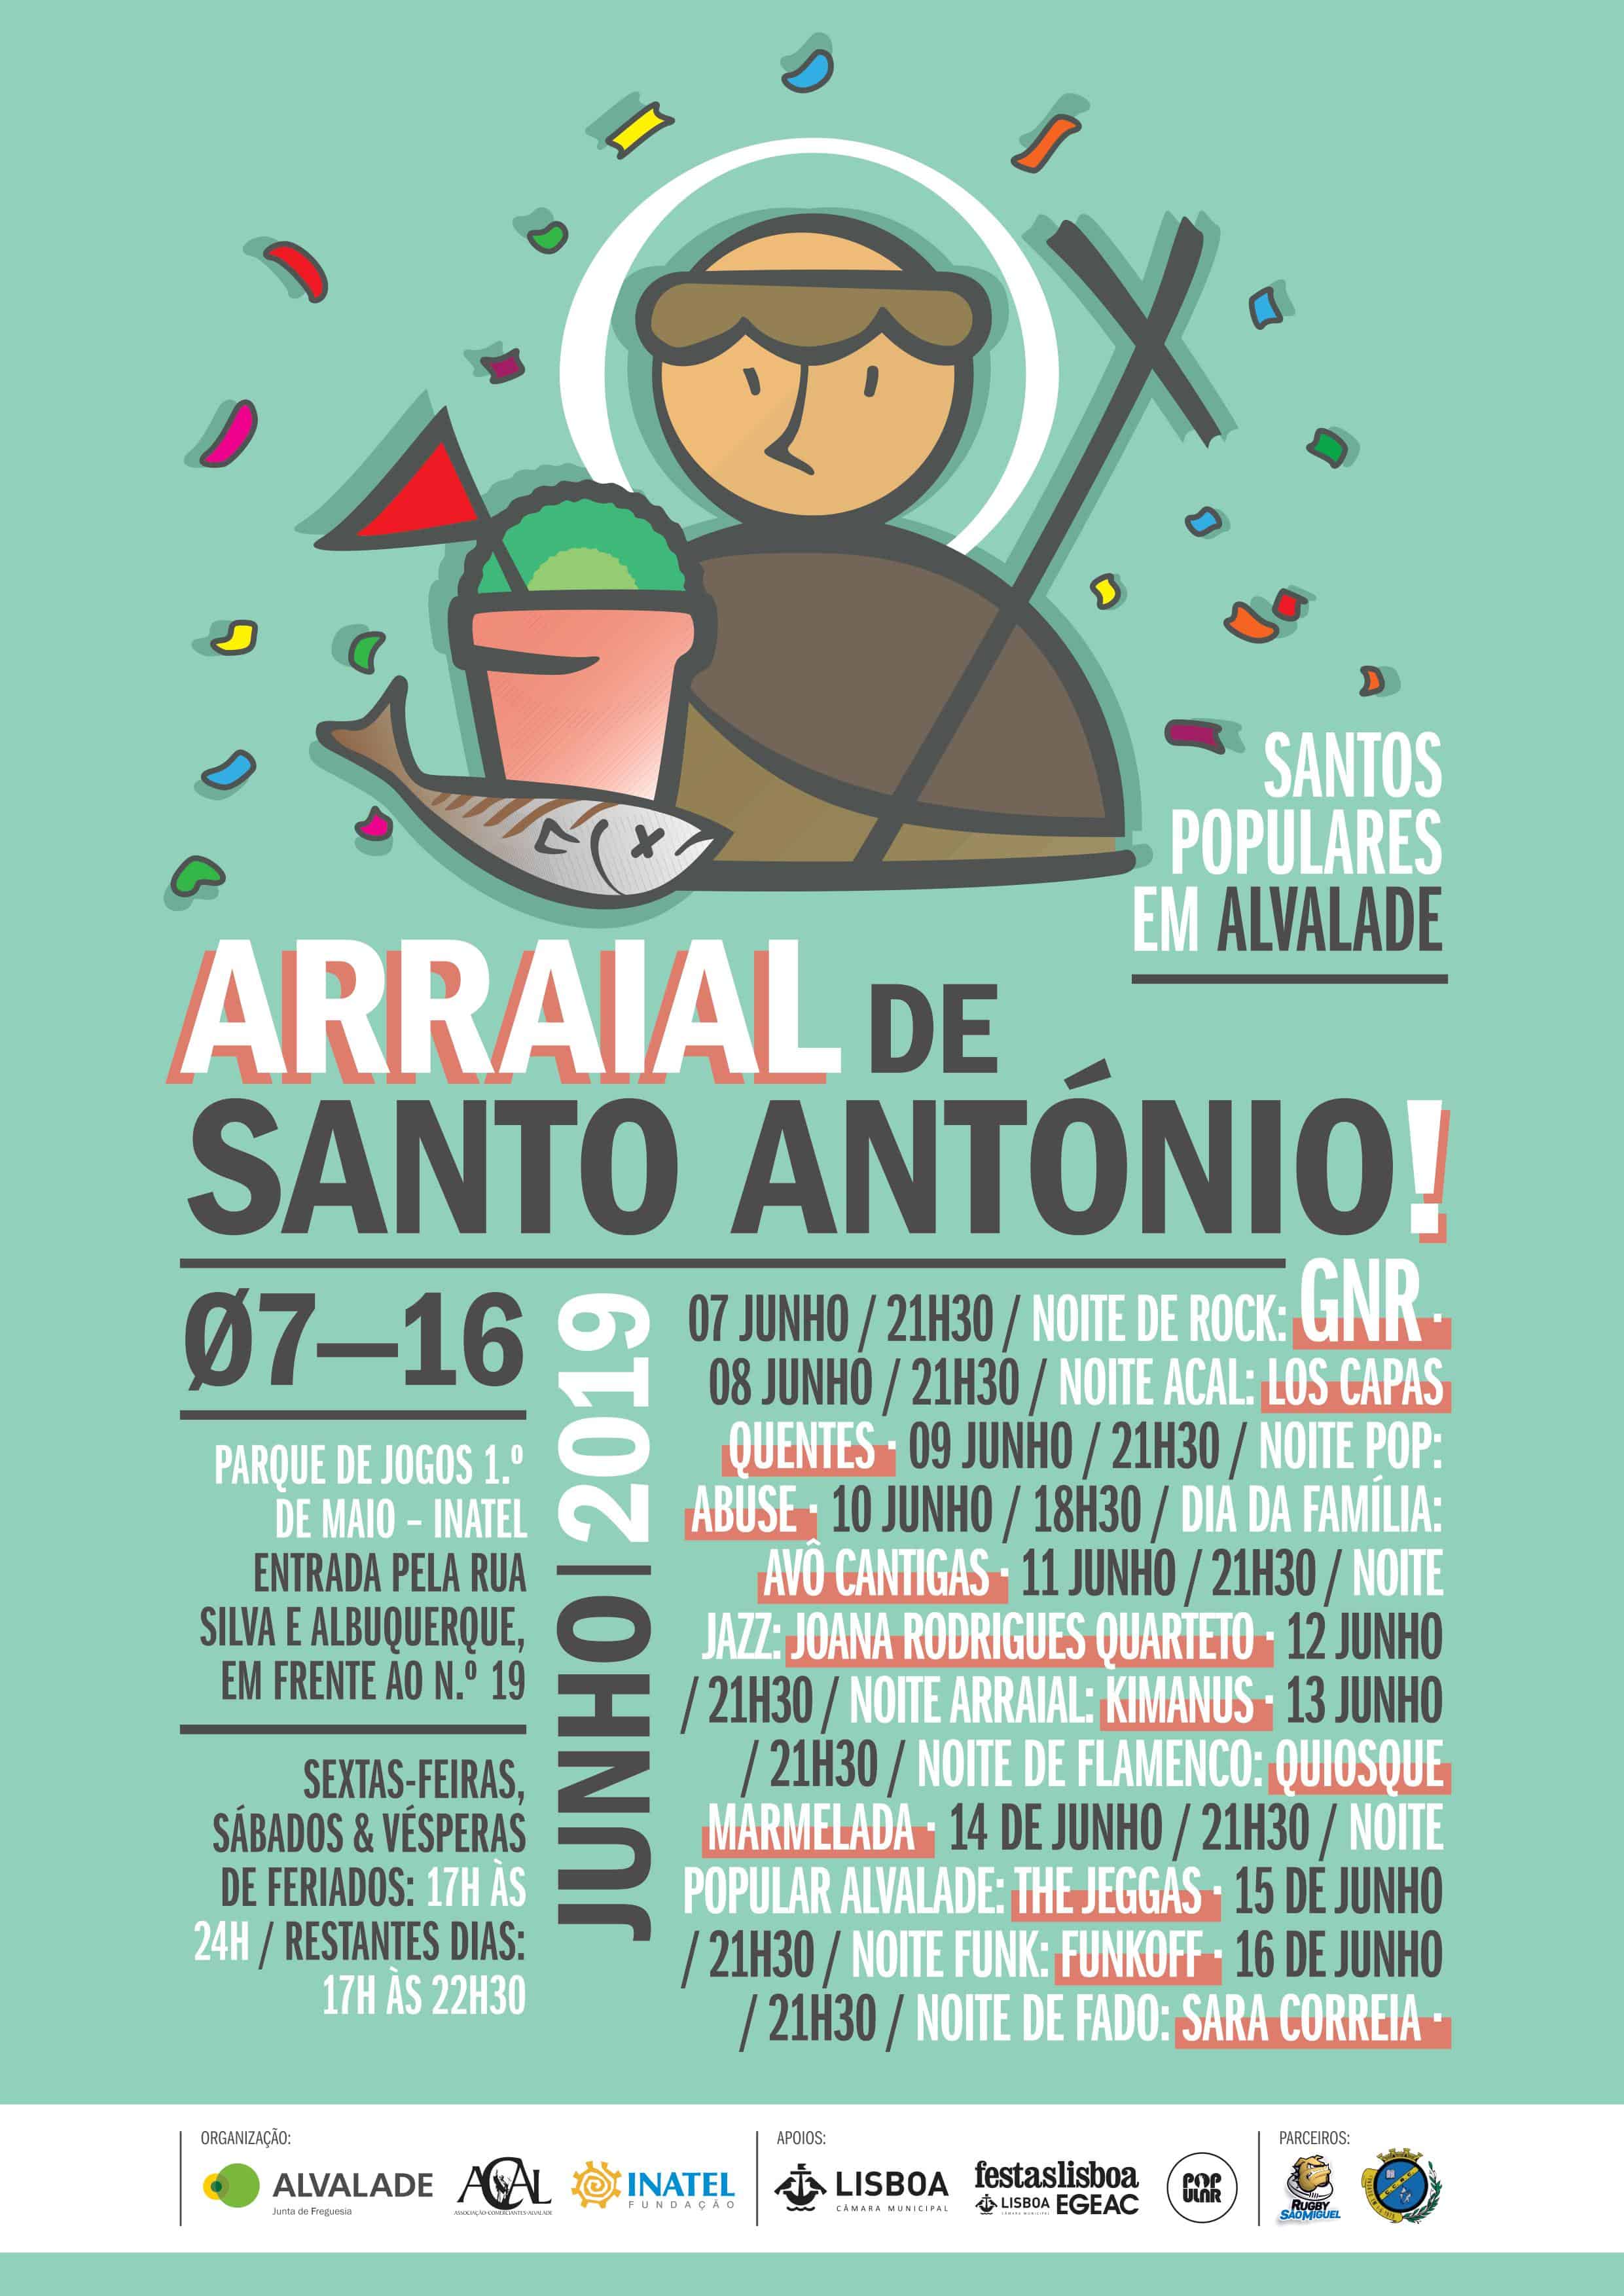 ARRAIAL DE SANTO ANTÓNIO 2019 – ALVALADE – LISBOA